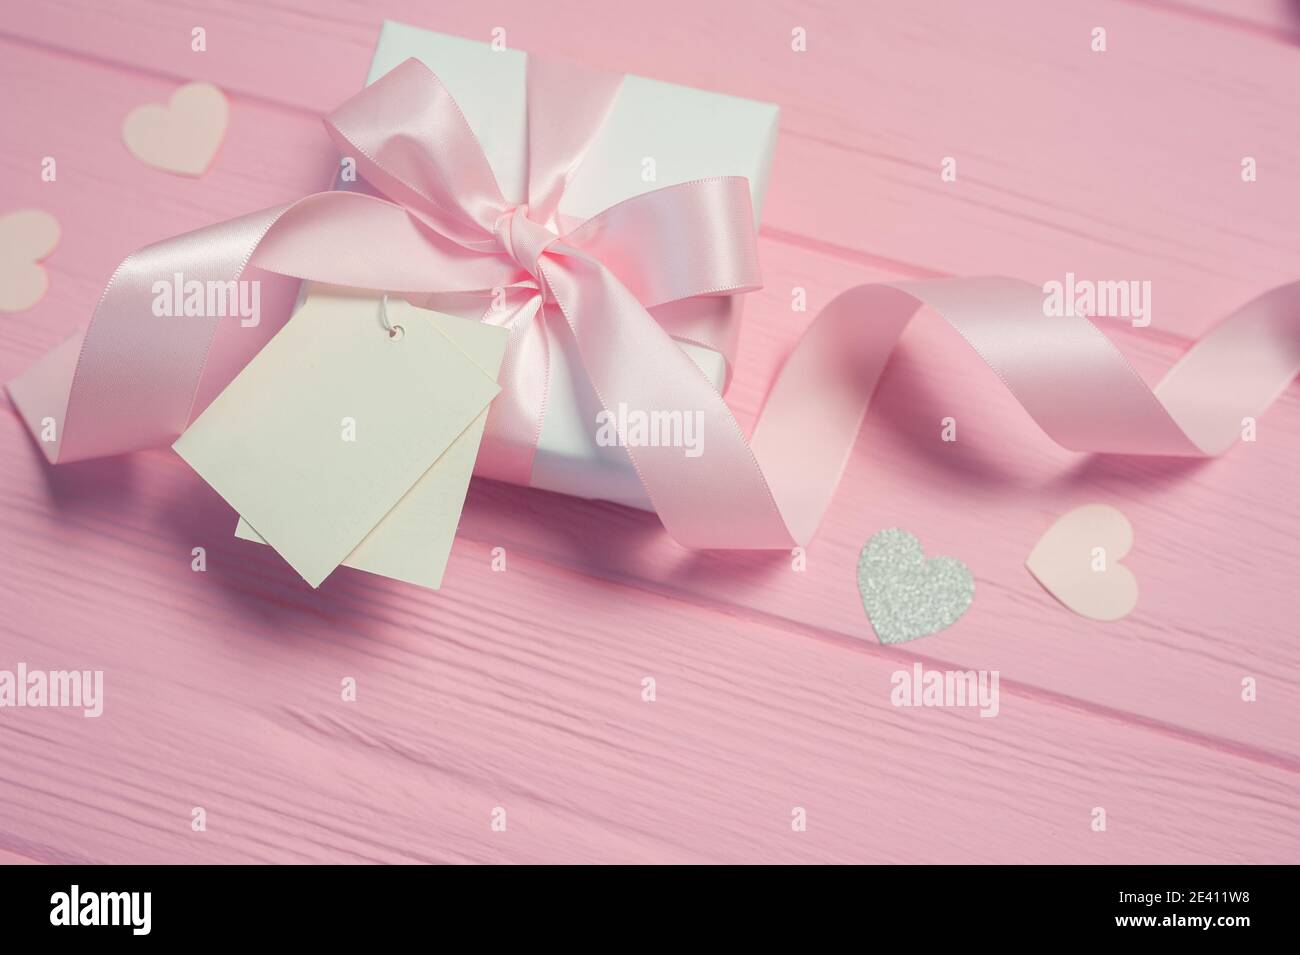 Boîte cadeau blanche avec noeud en satin rose et ruban sur fond de bois rose. L'étiquette de maquette de mariage est incluse pour votre texte. Peut être utilisé pour la Saint-Valentin Banque D'Images